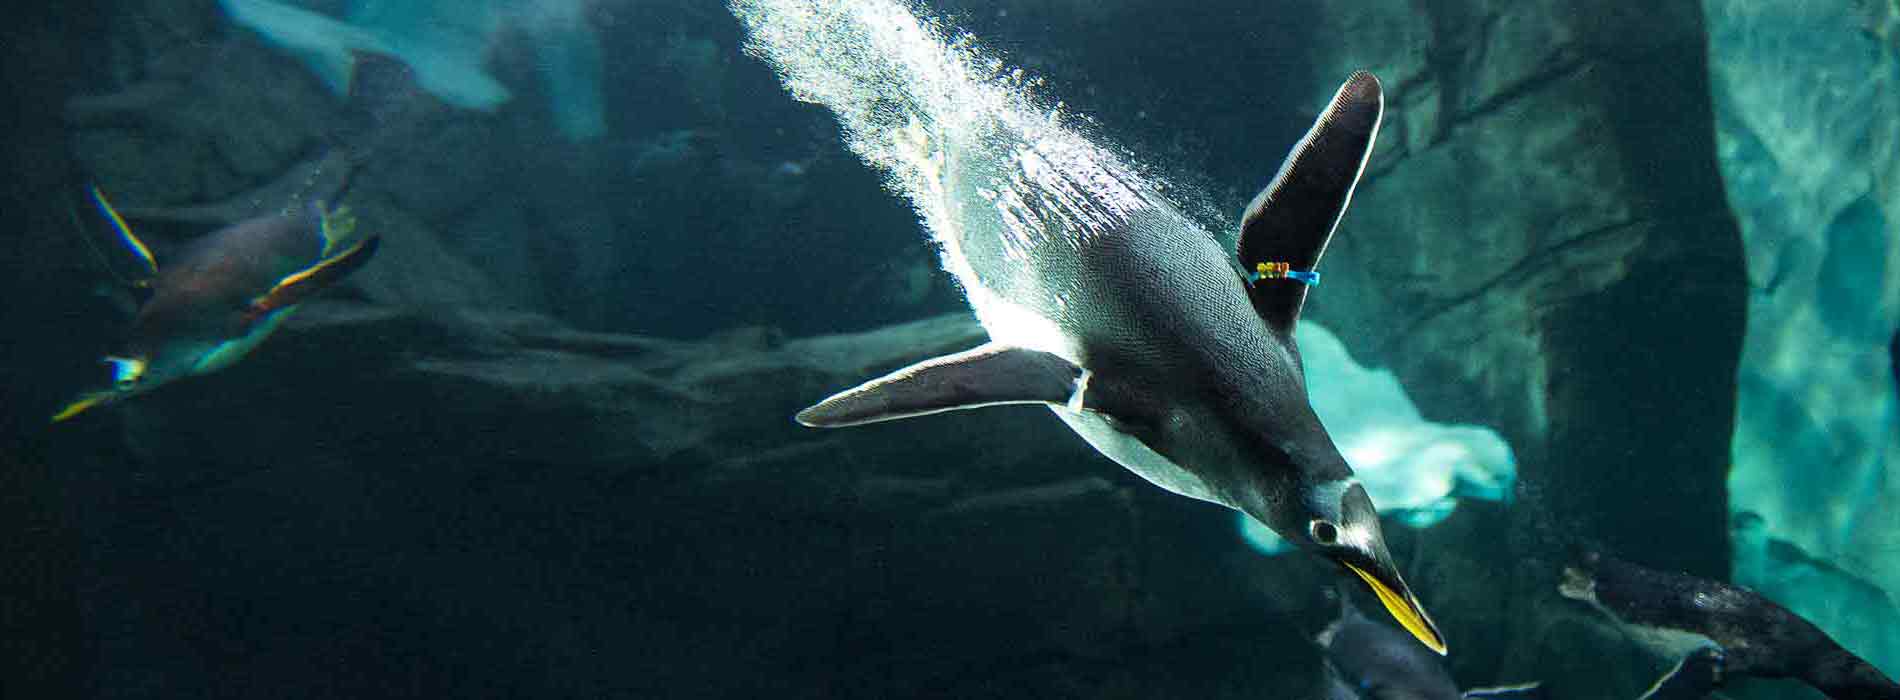 Gentoo penguin diving underwater